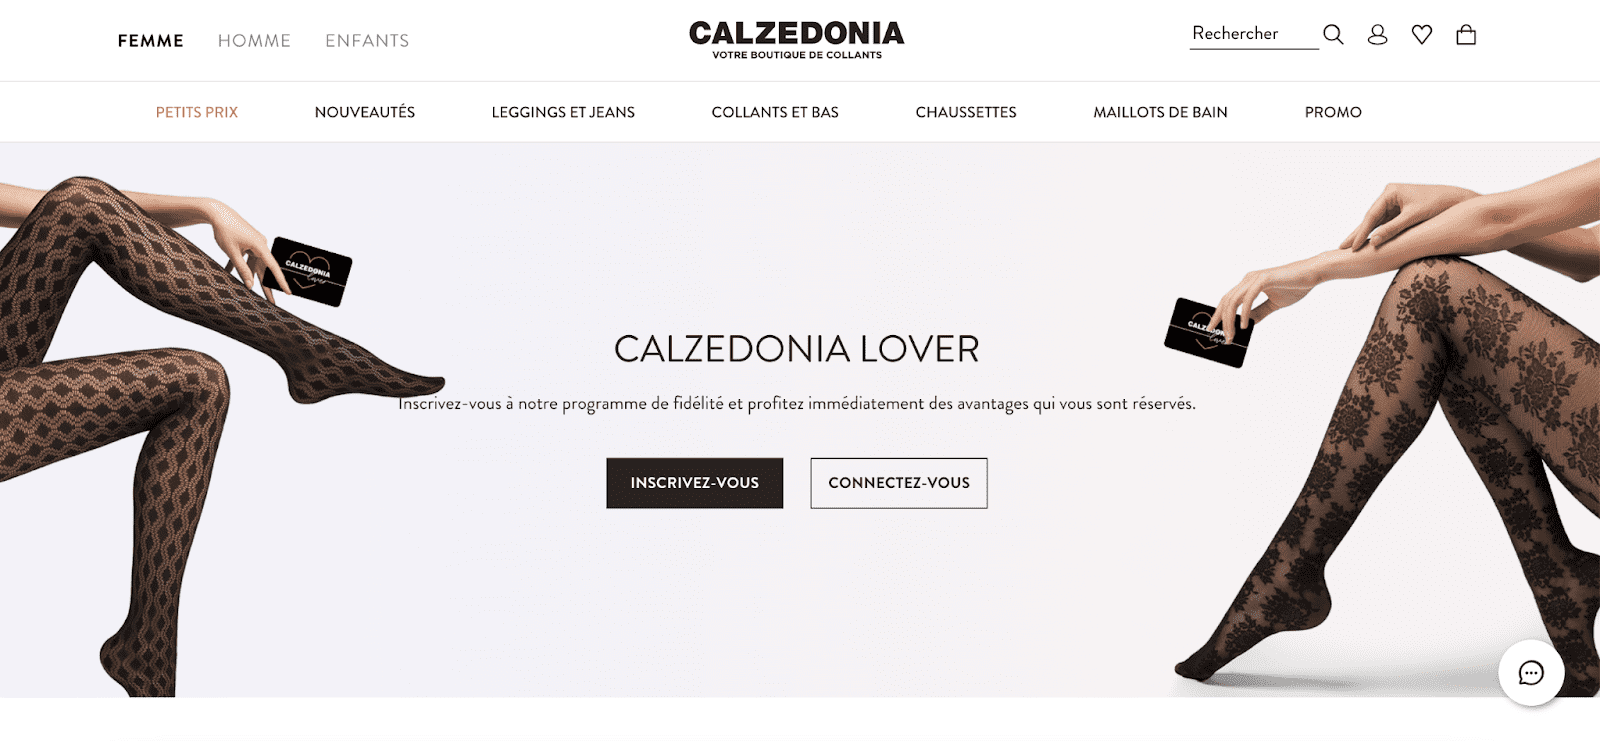 Programme de fidélité sur le site Calzedonia pour la fidélisation client marketing